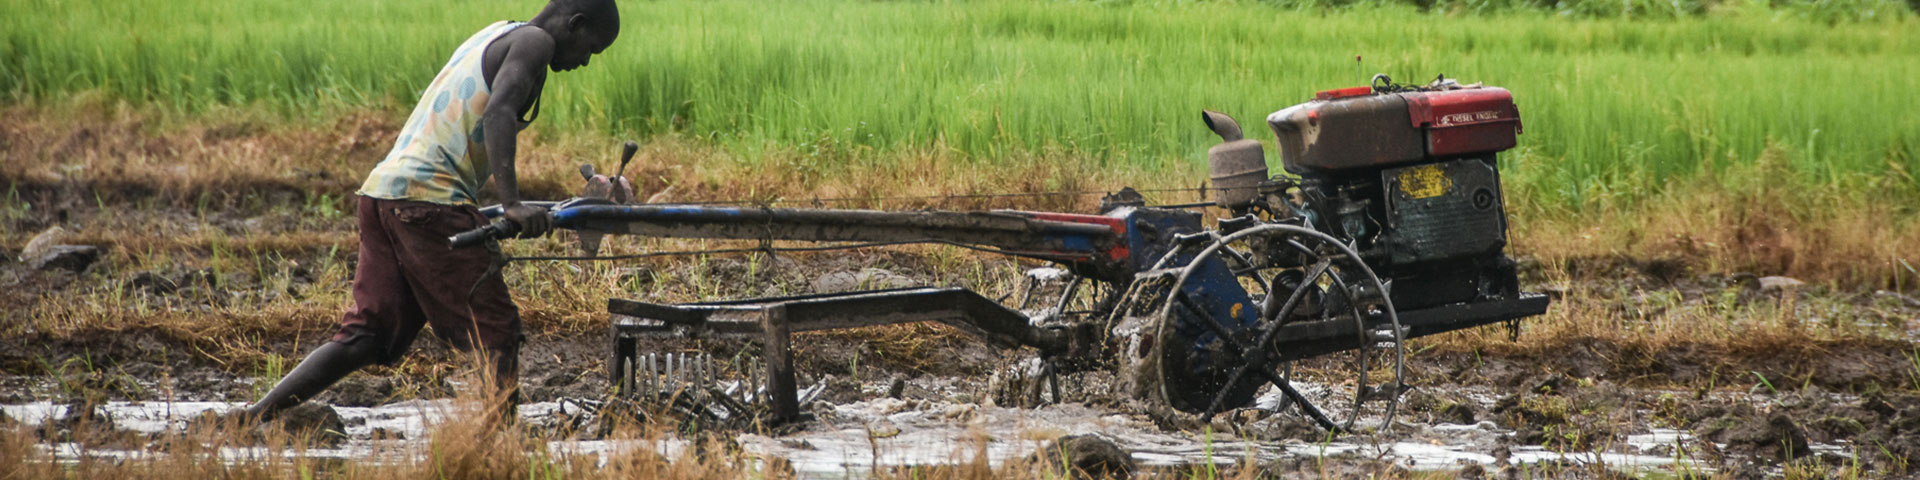 Ein Reisbauer schiebt einen Pflug